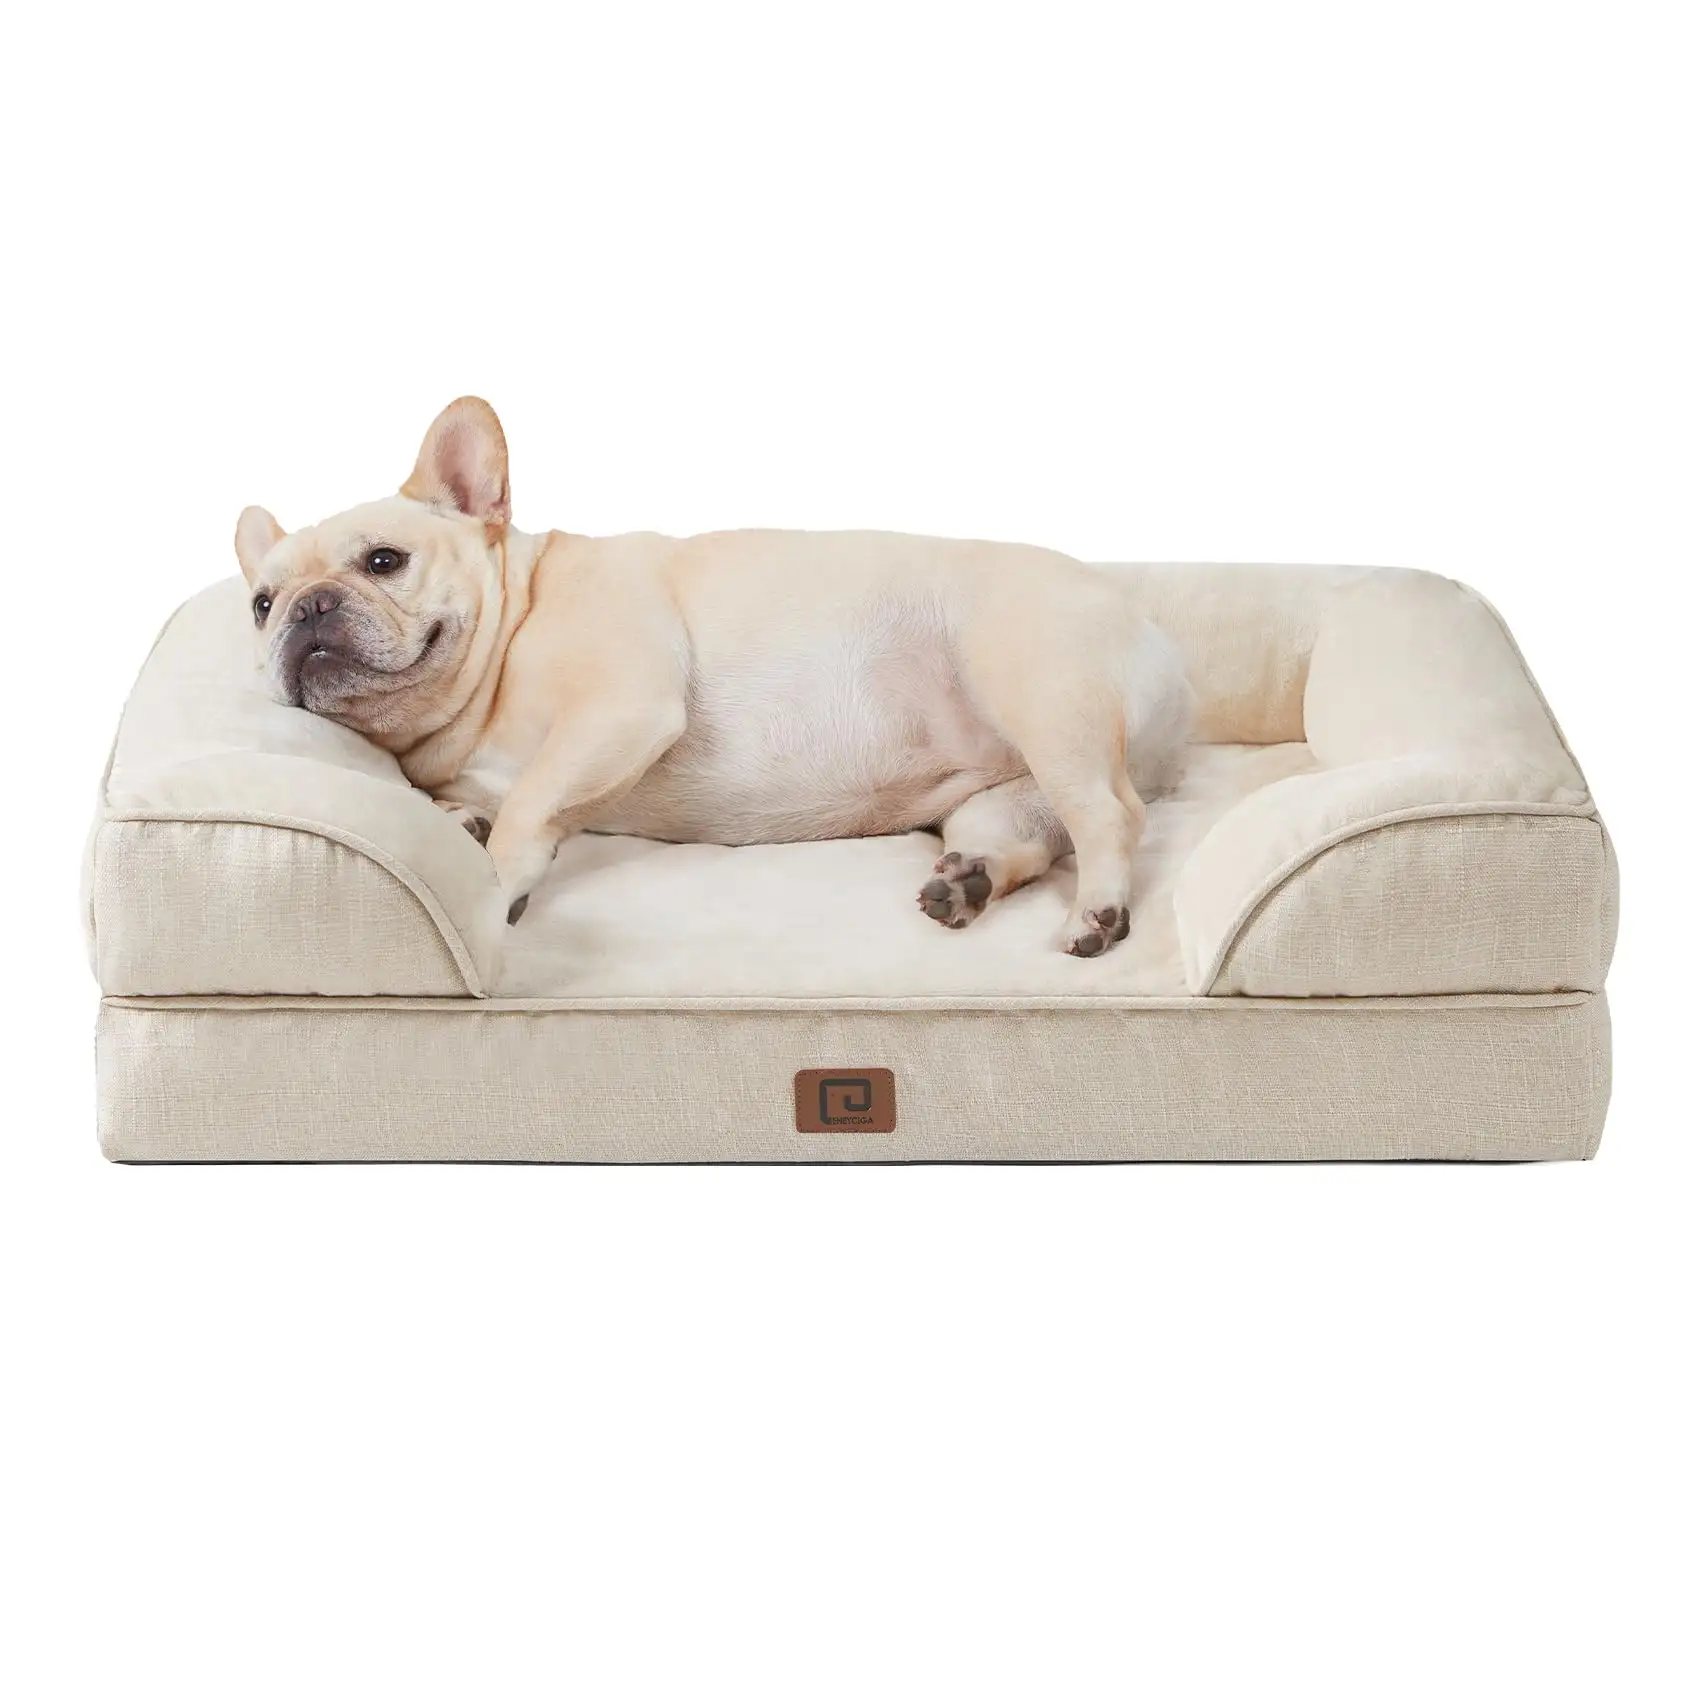 Tempat tidur anjing ortopedi, tempat tidur anjing di Smail, 30.0 _ L x 20.0 _ W x 6.5 _ Th Beige tahan air busa memori dengan sisi